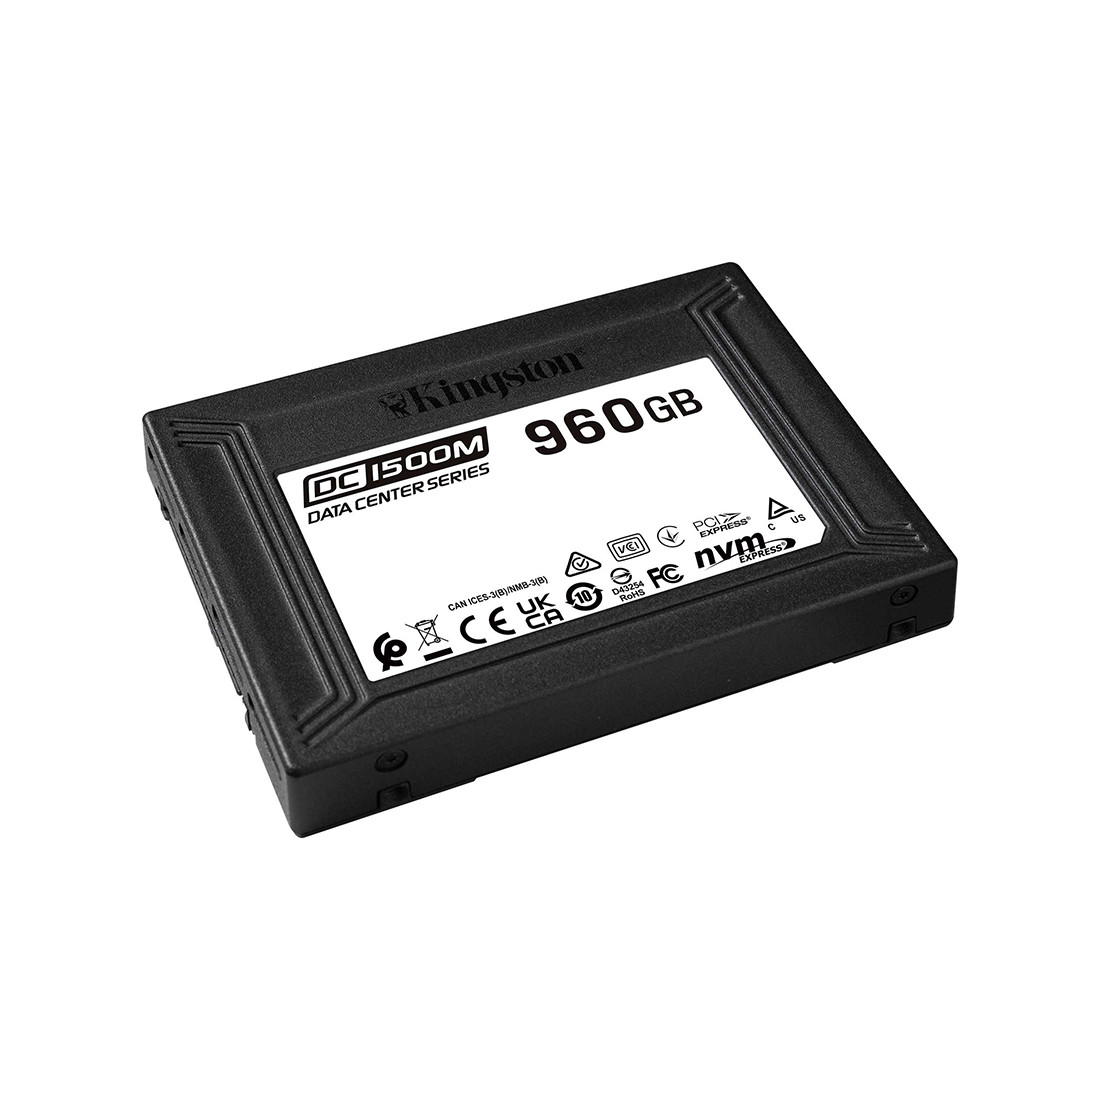 Твердотельный накопитель SSD Kingston SEDC1500M/960G U.2 15 мм, фото 1